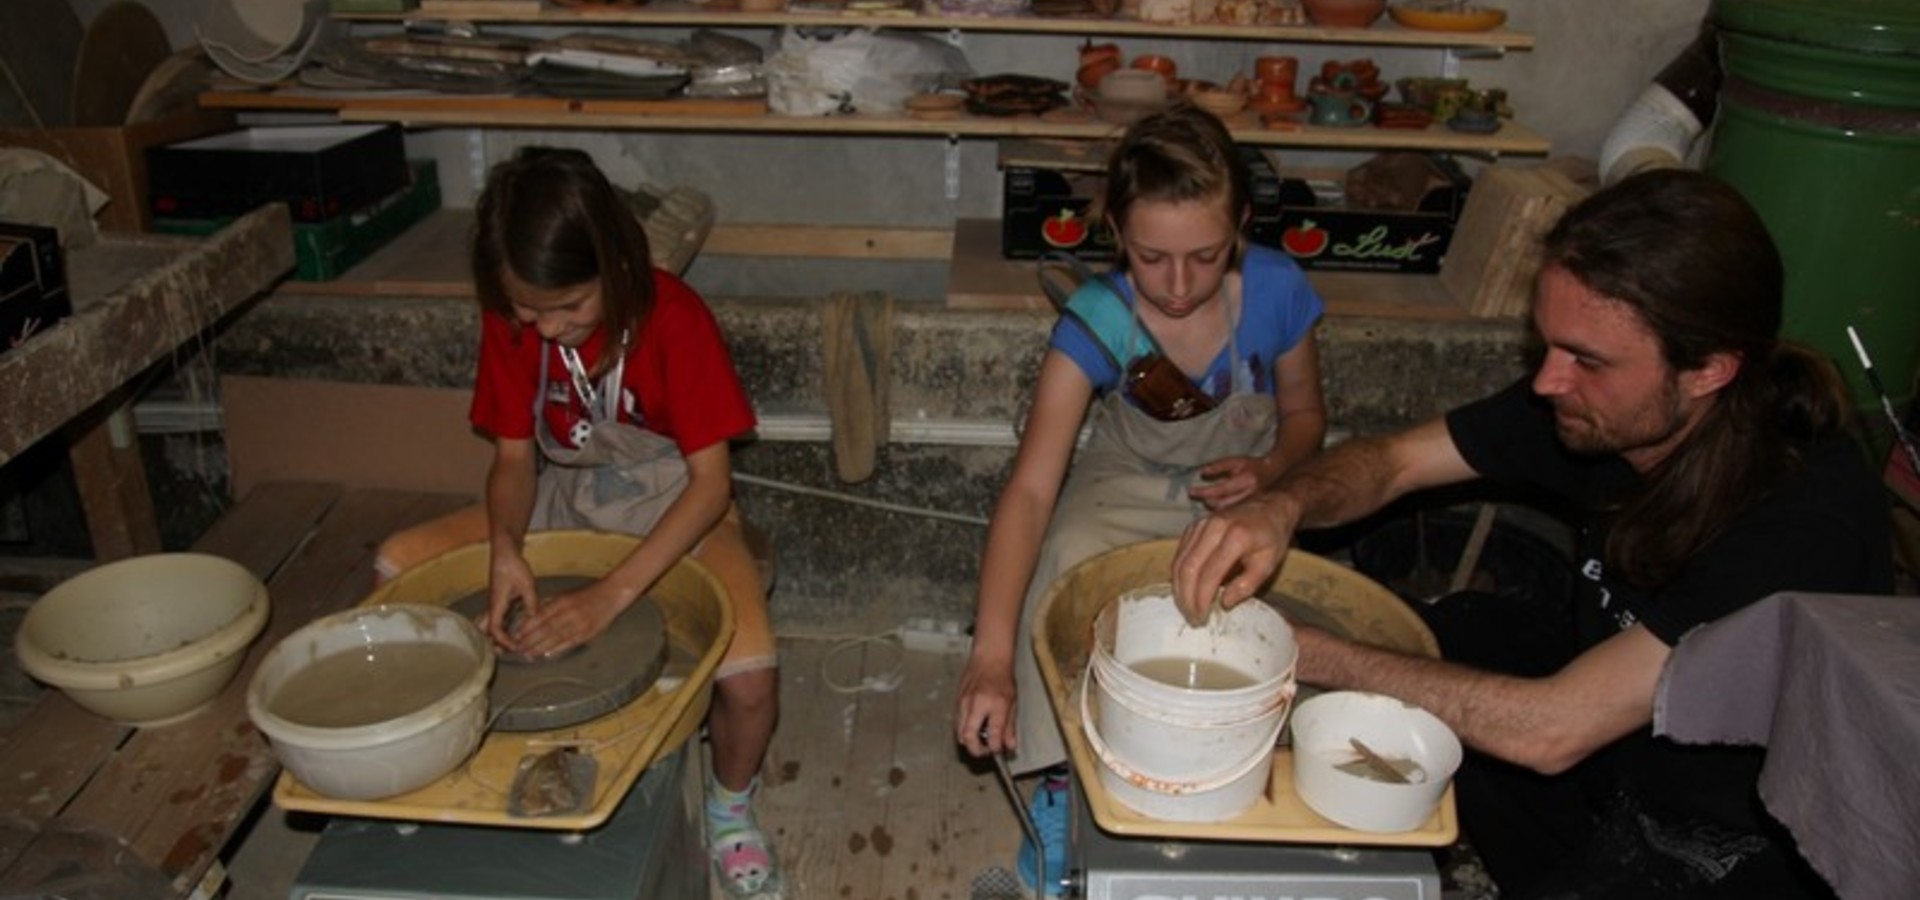 Delavnica za otroke: Ustvarjanje z glino na lončarskem vretenu z Denisom Kuharjem